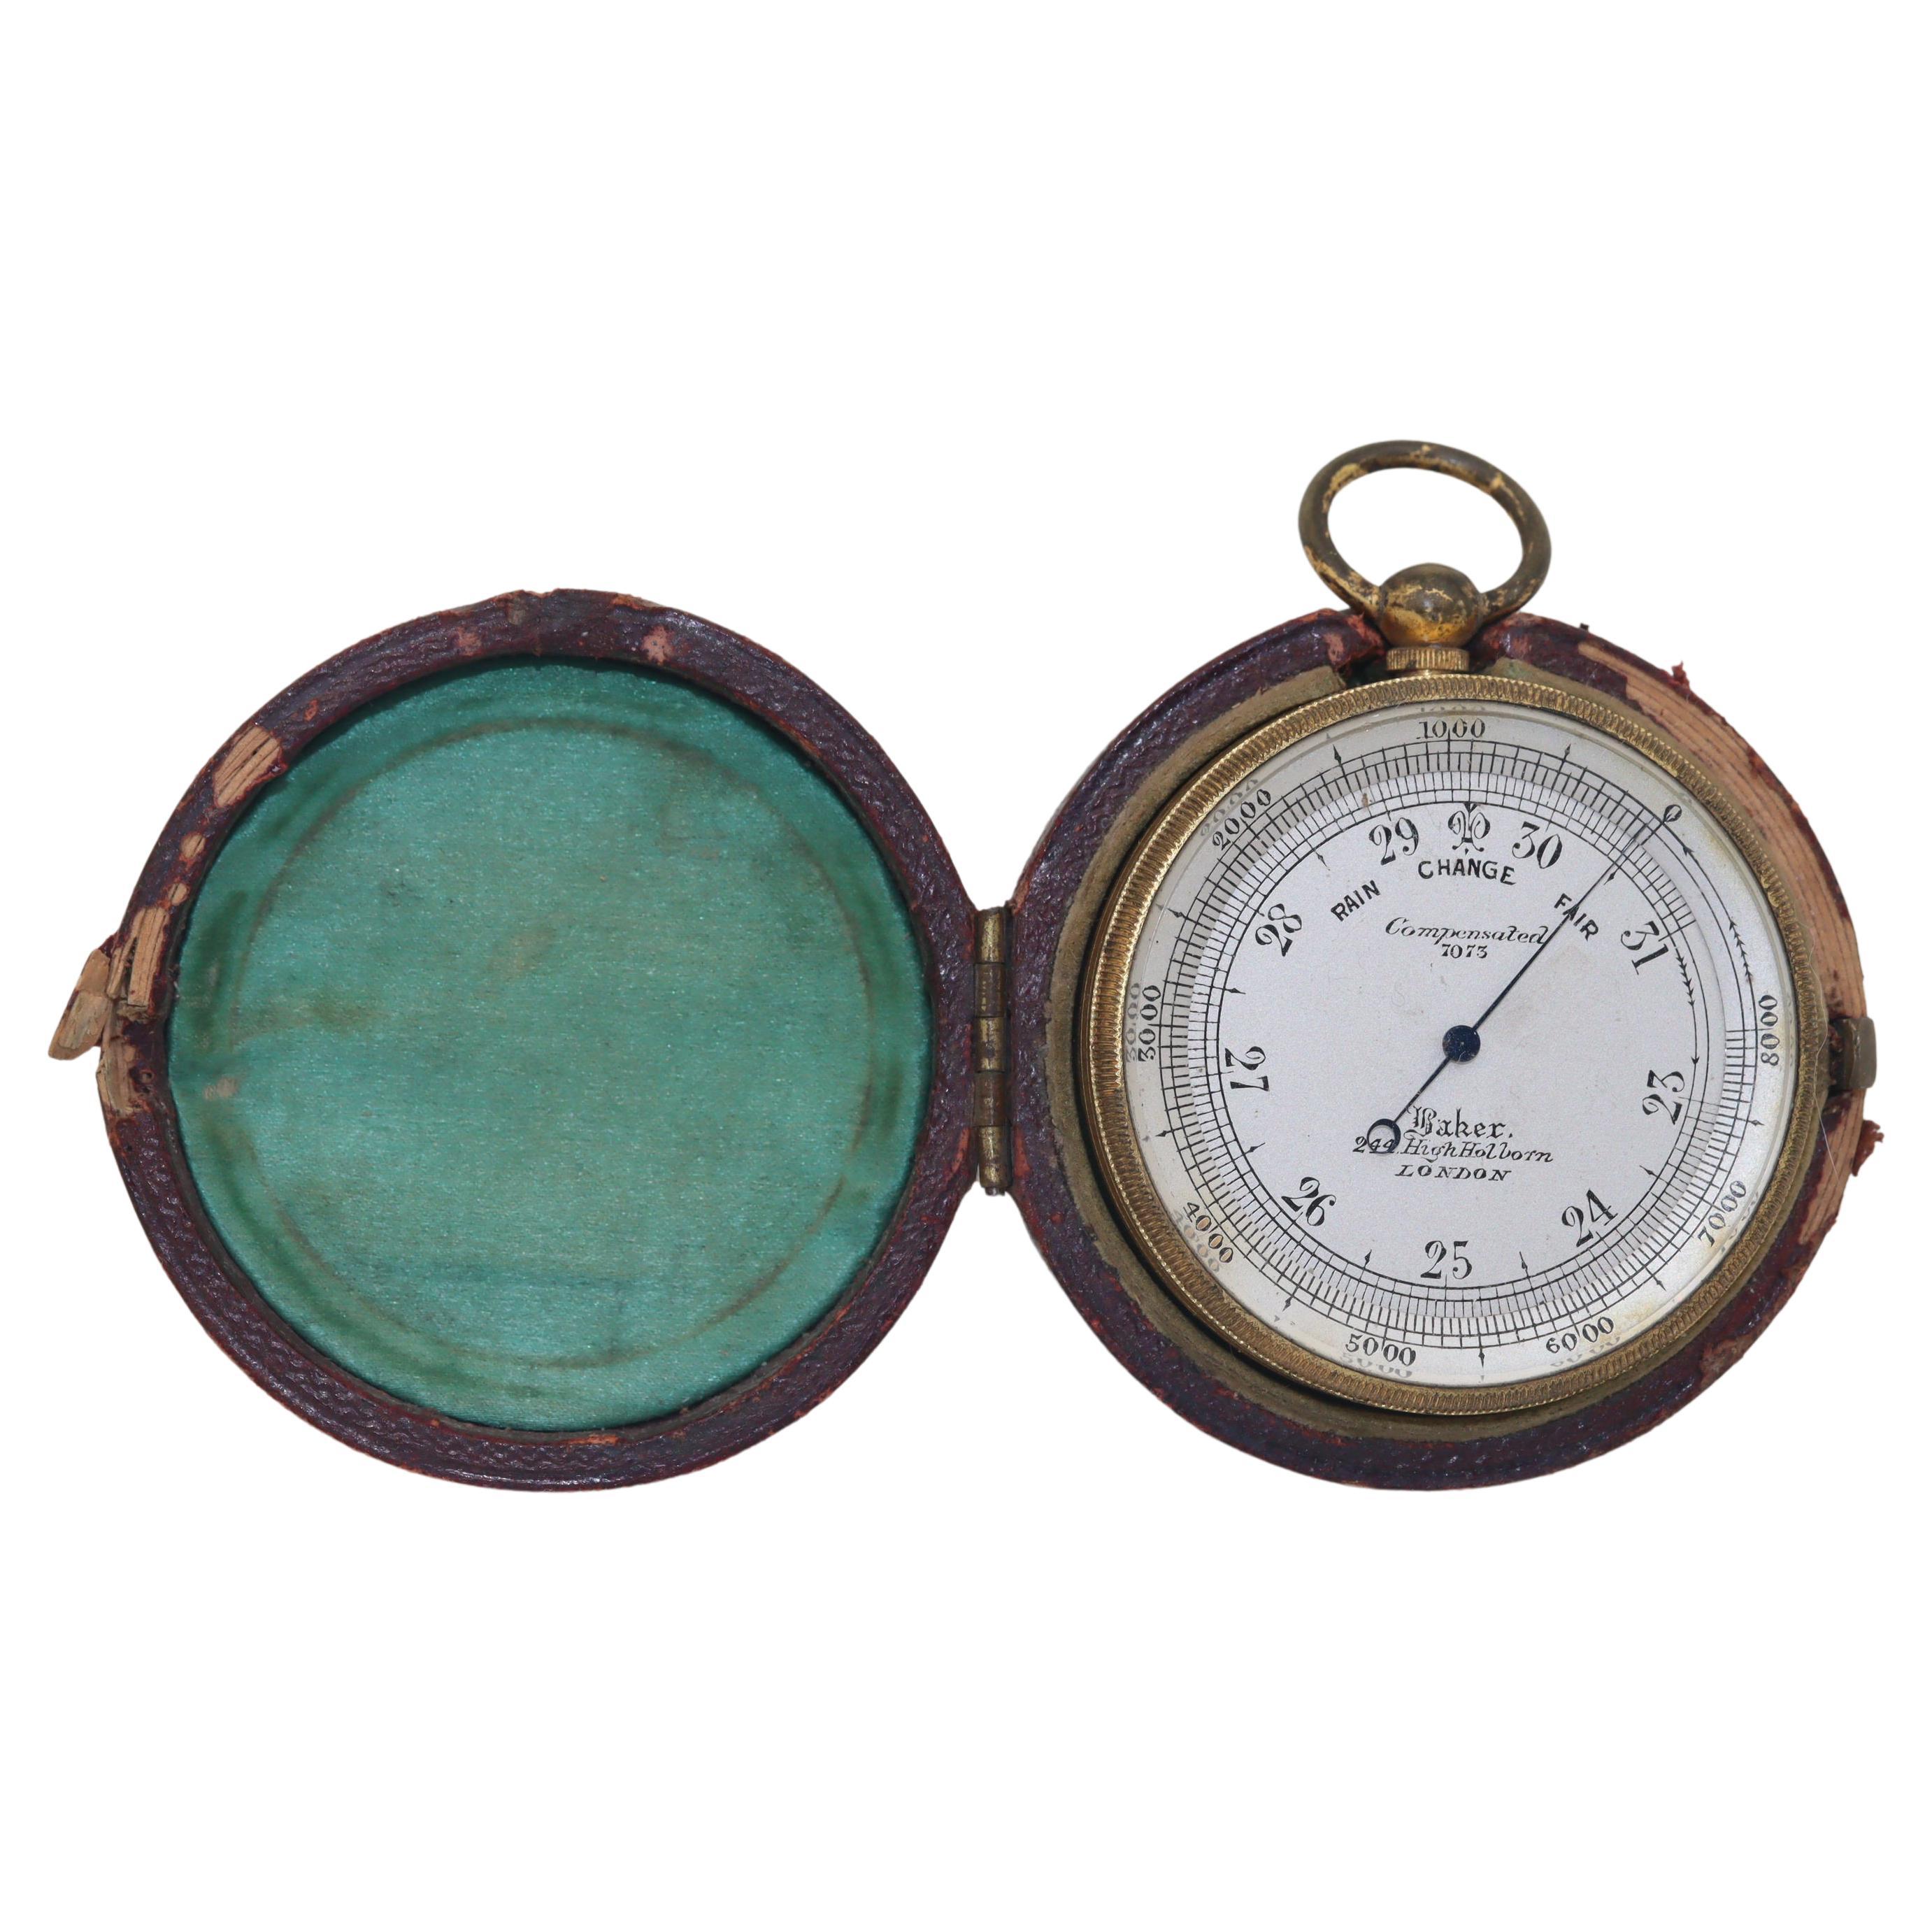 Taschenbarometer mit Taschen von C Baker im Originalgehäuse